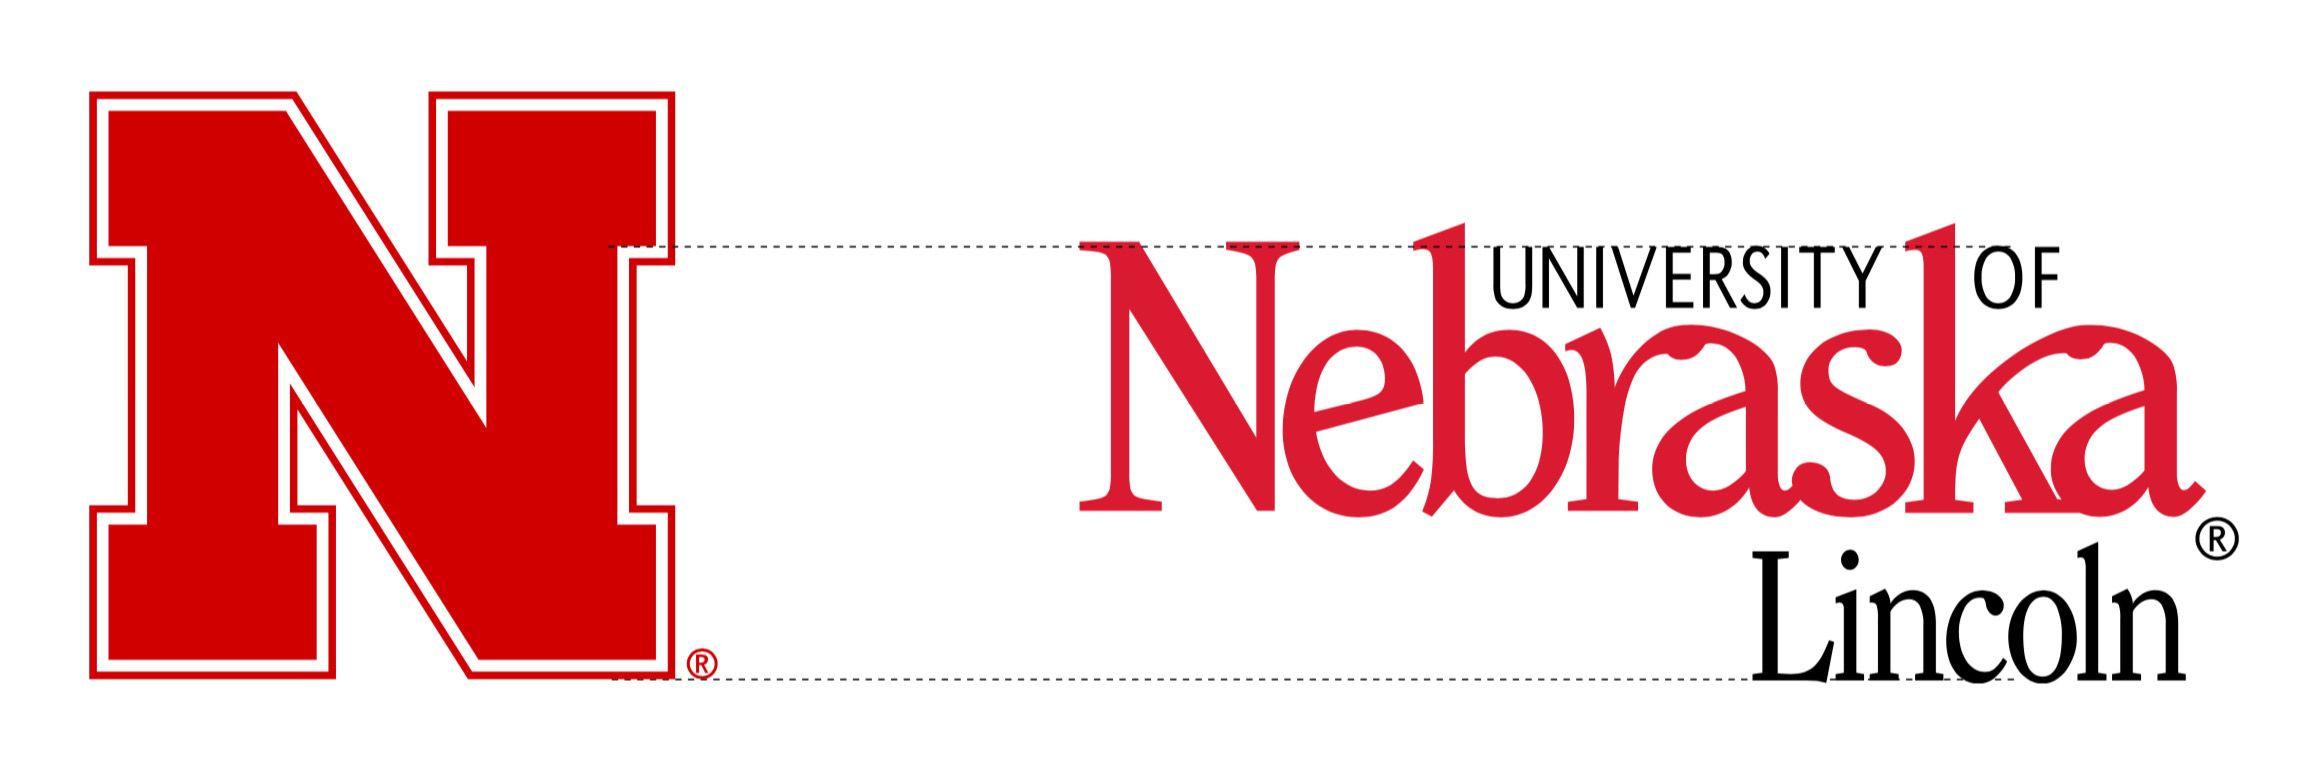 Nebraska N Logo - Our Marks